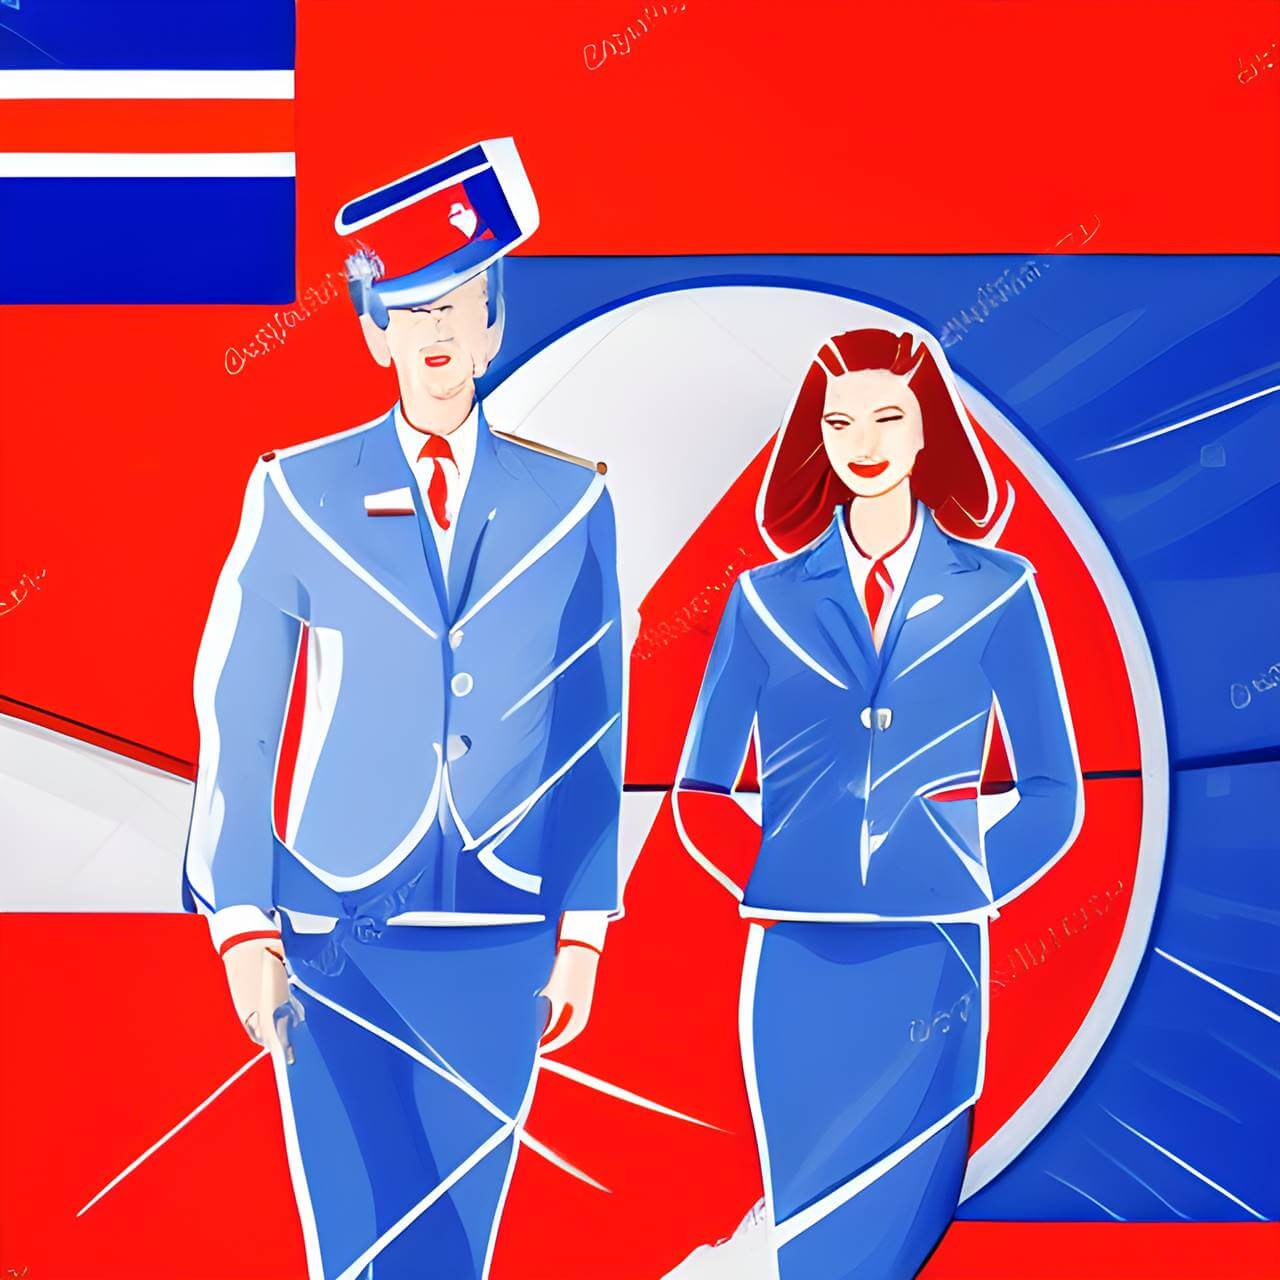 flight attendant jobs in Czechia